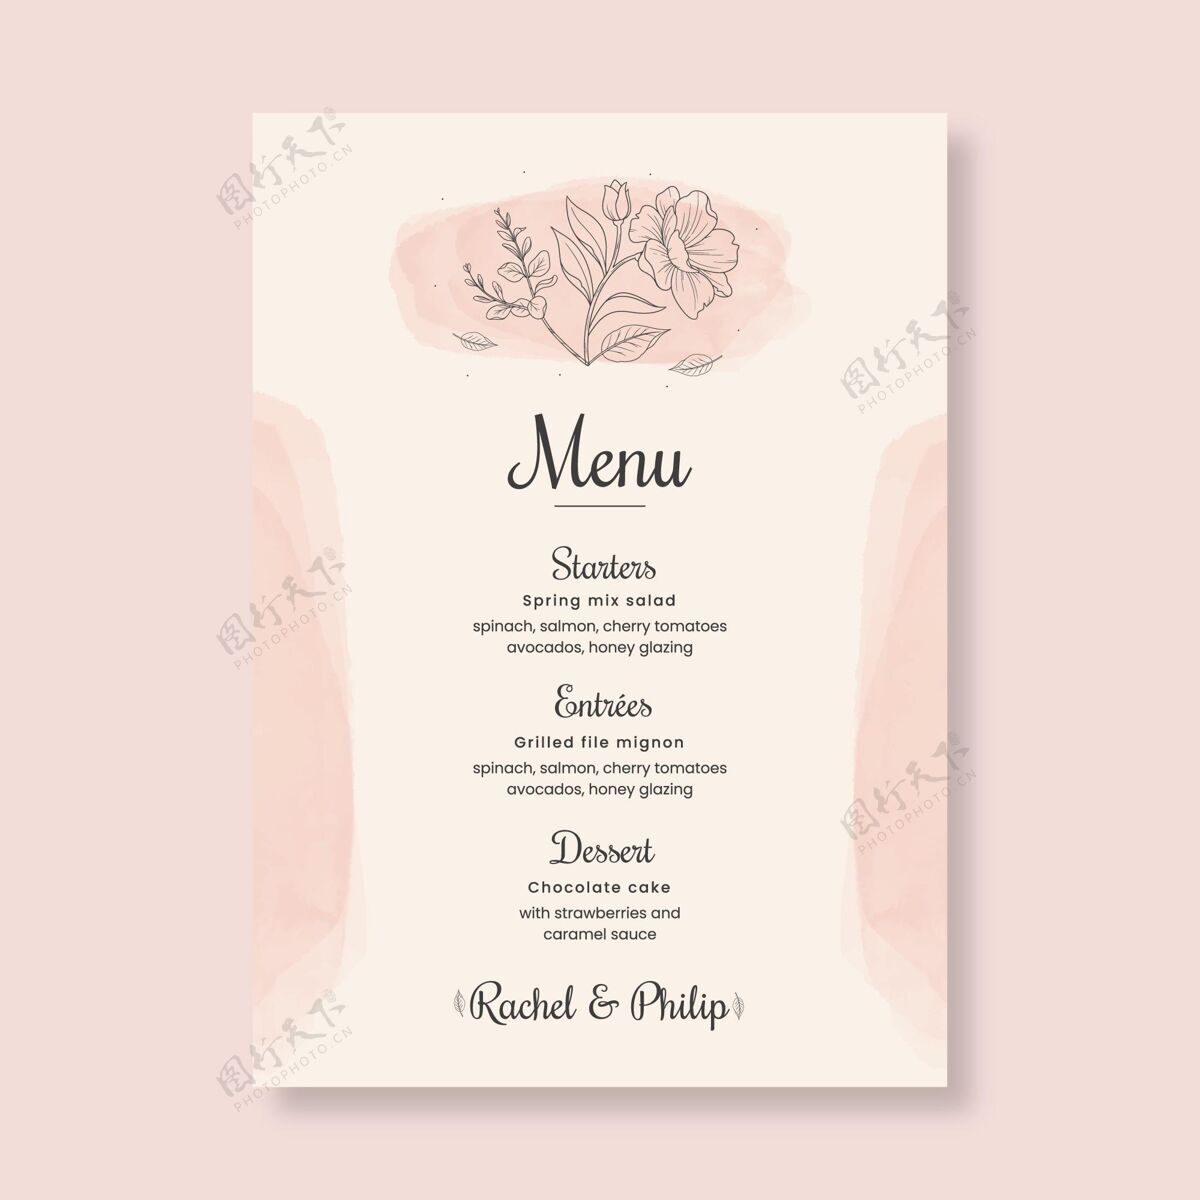 婚礼花卉婚礼菜单模板鲜花保存日期随时打印